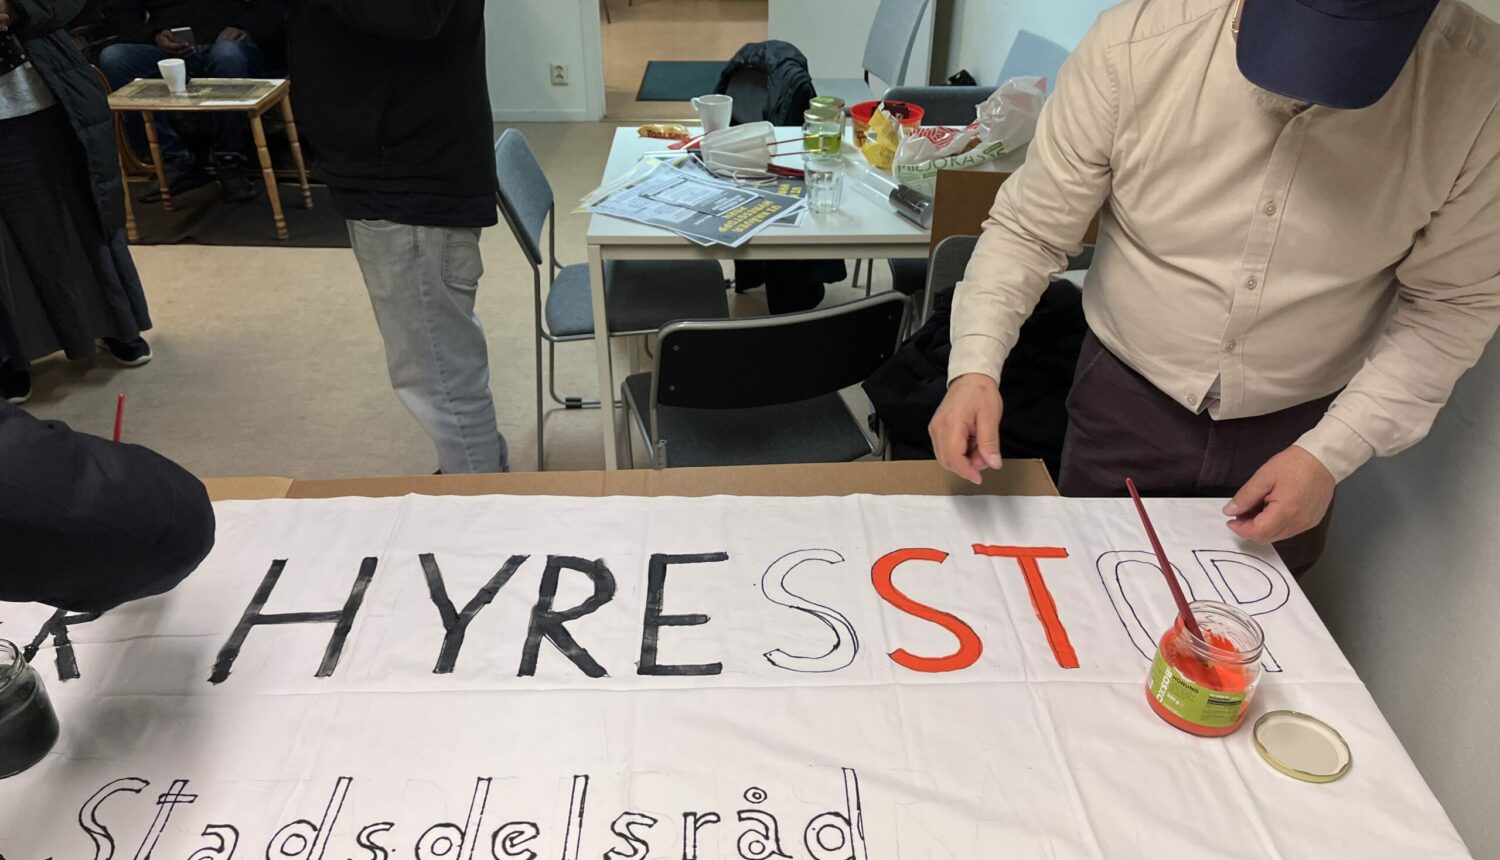 En man målar en banderoll med ordet Hyresstopp.